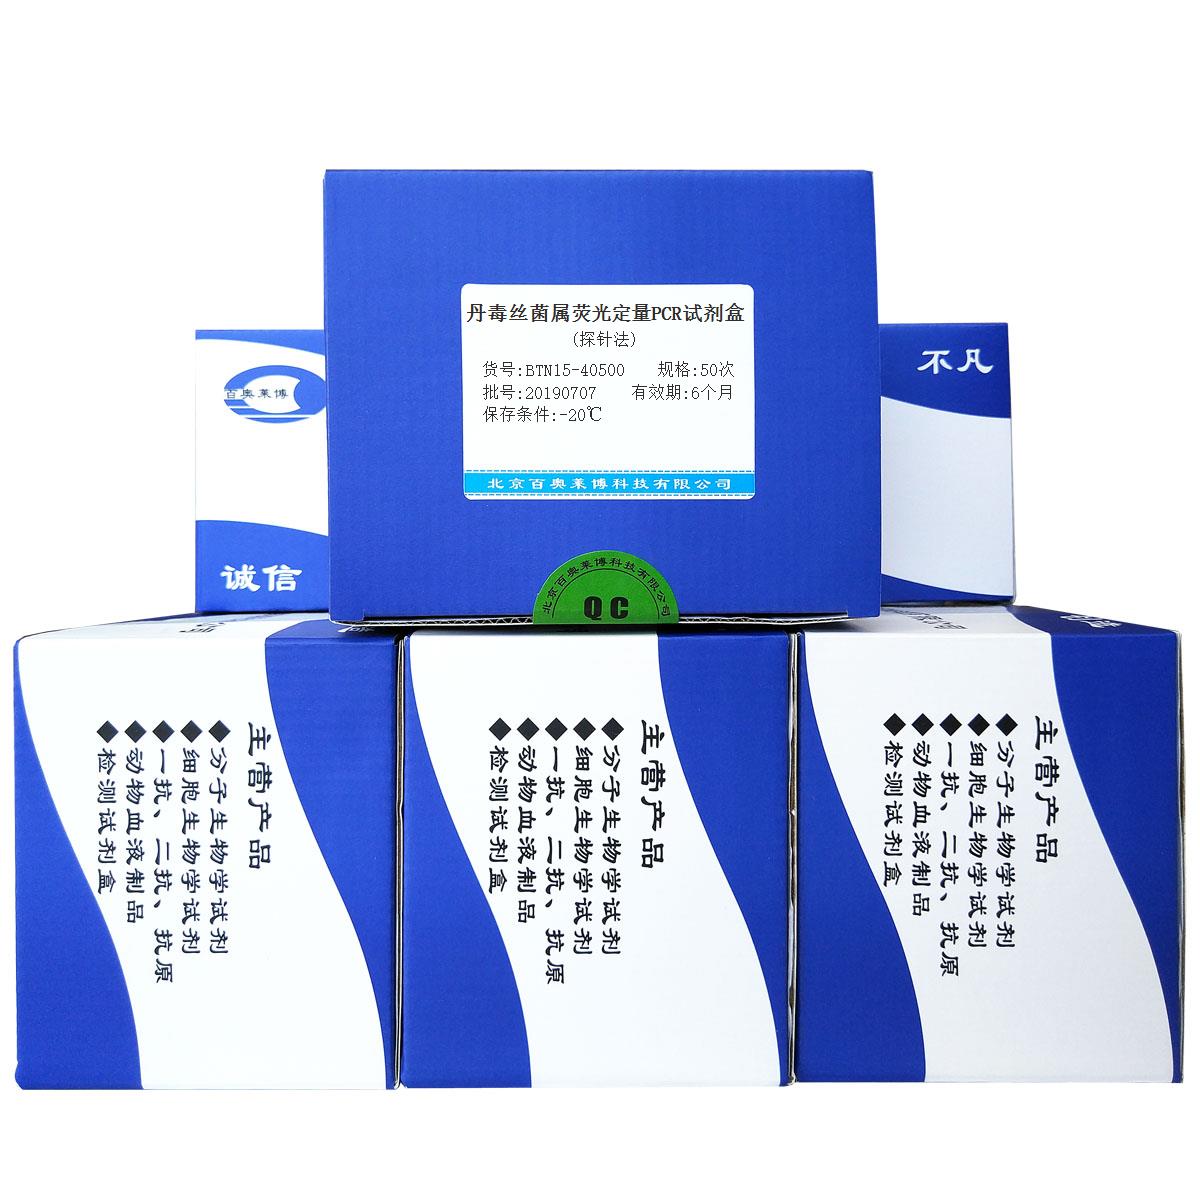 丹毒丝菌属荧光定量PCR试剂盒(探针法)